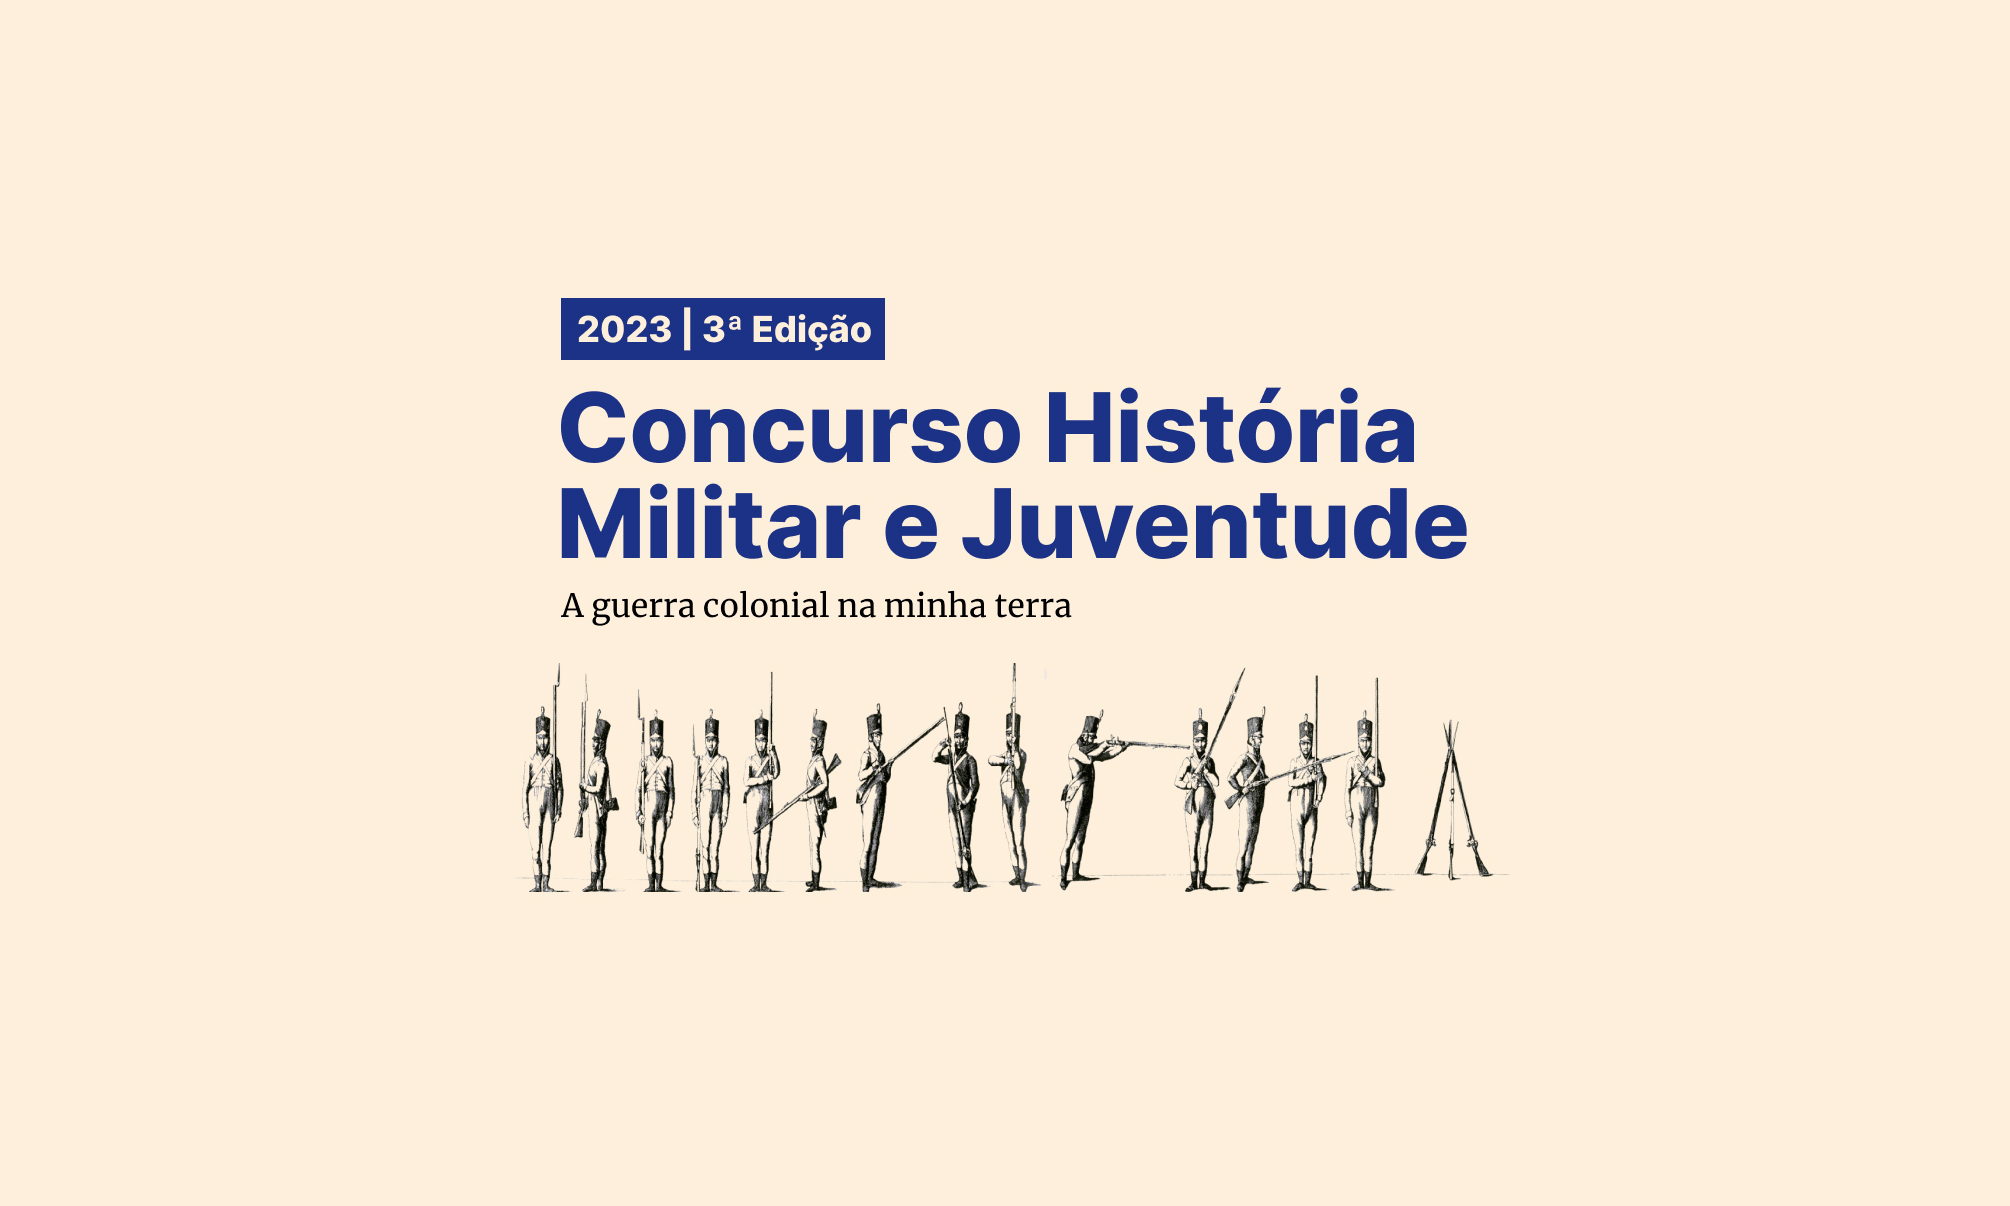 Concurso História Militar e Juventude 2023